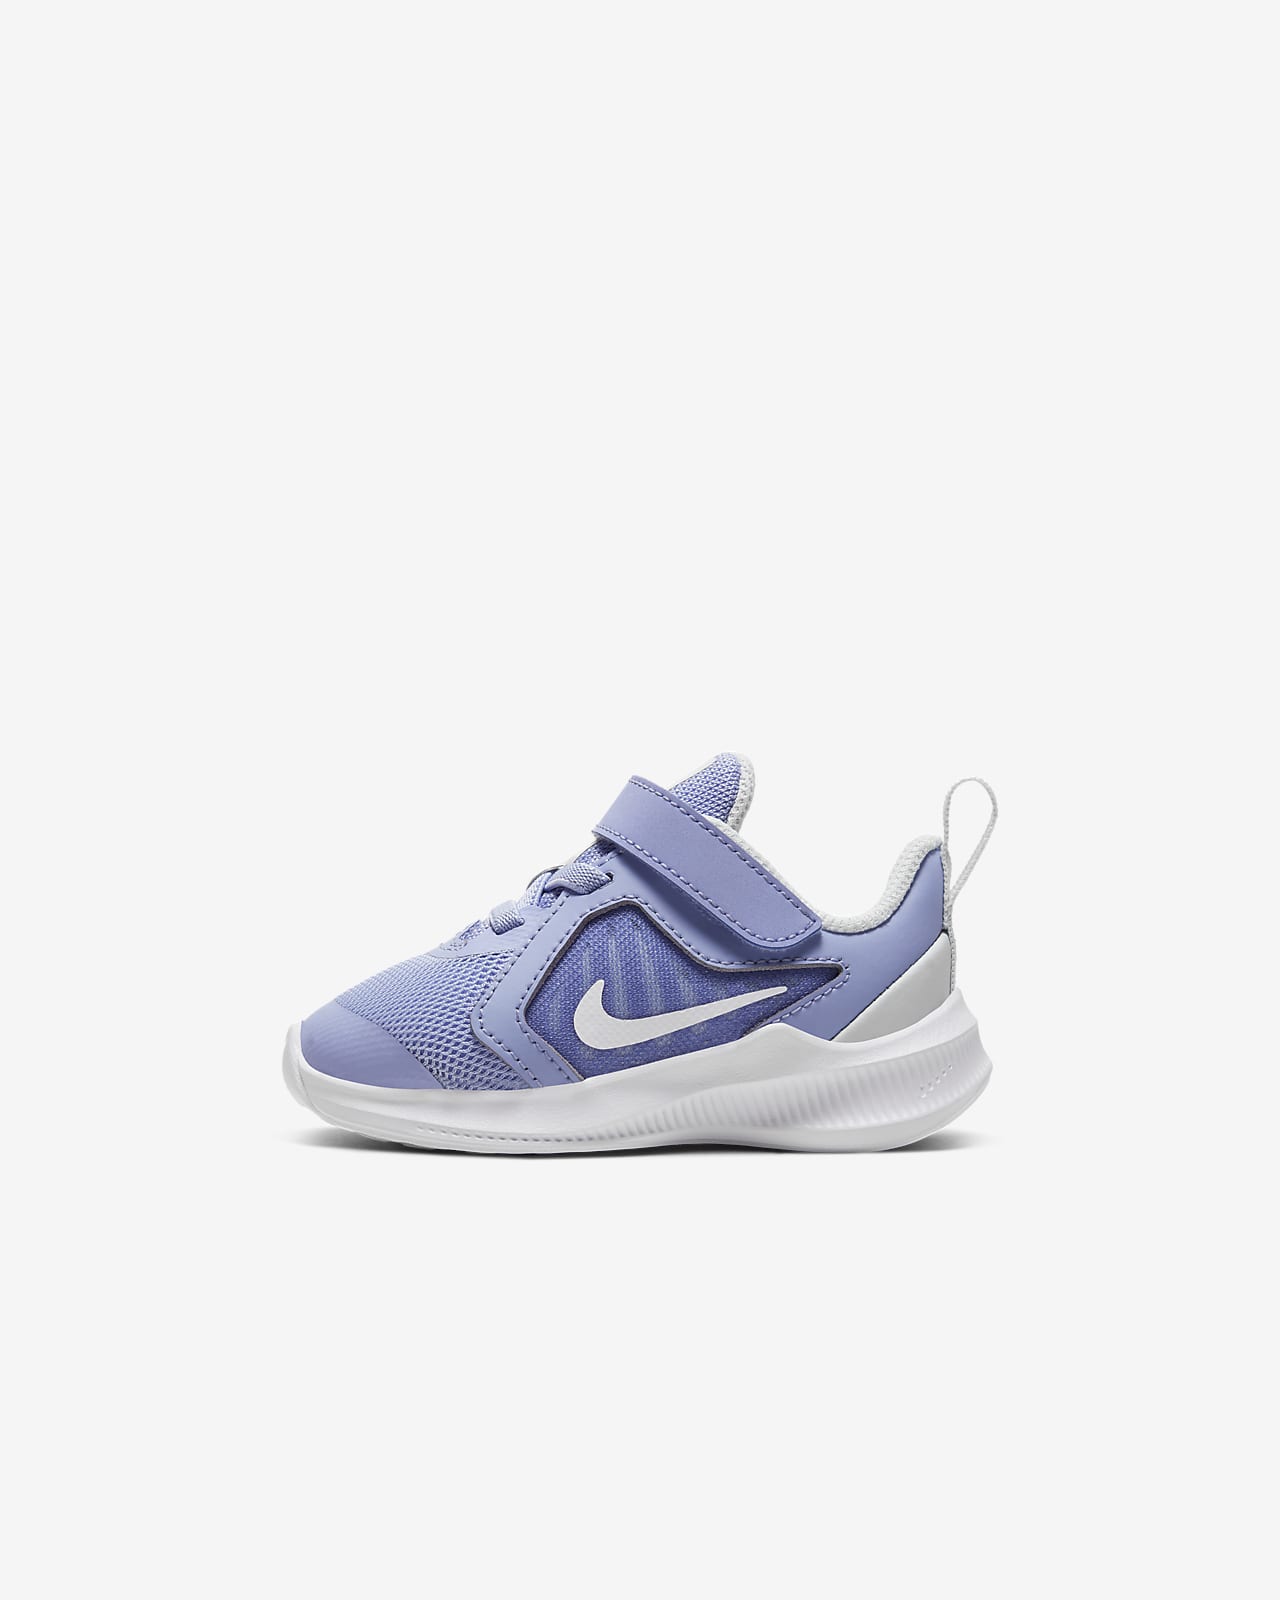 Toddler Shoe. Nike LU